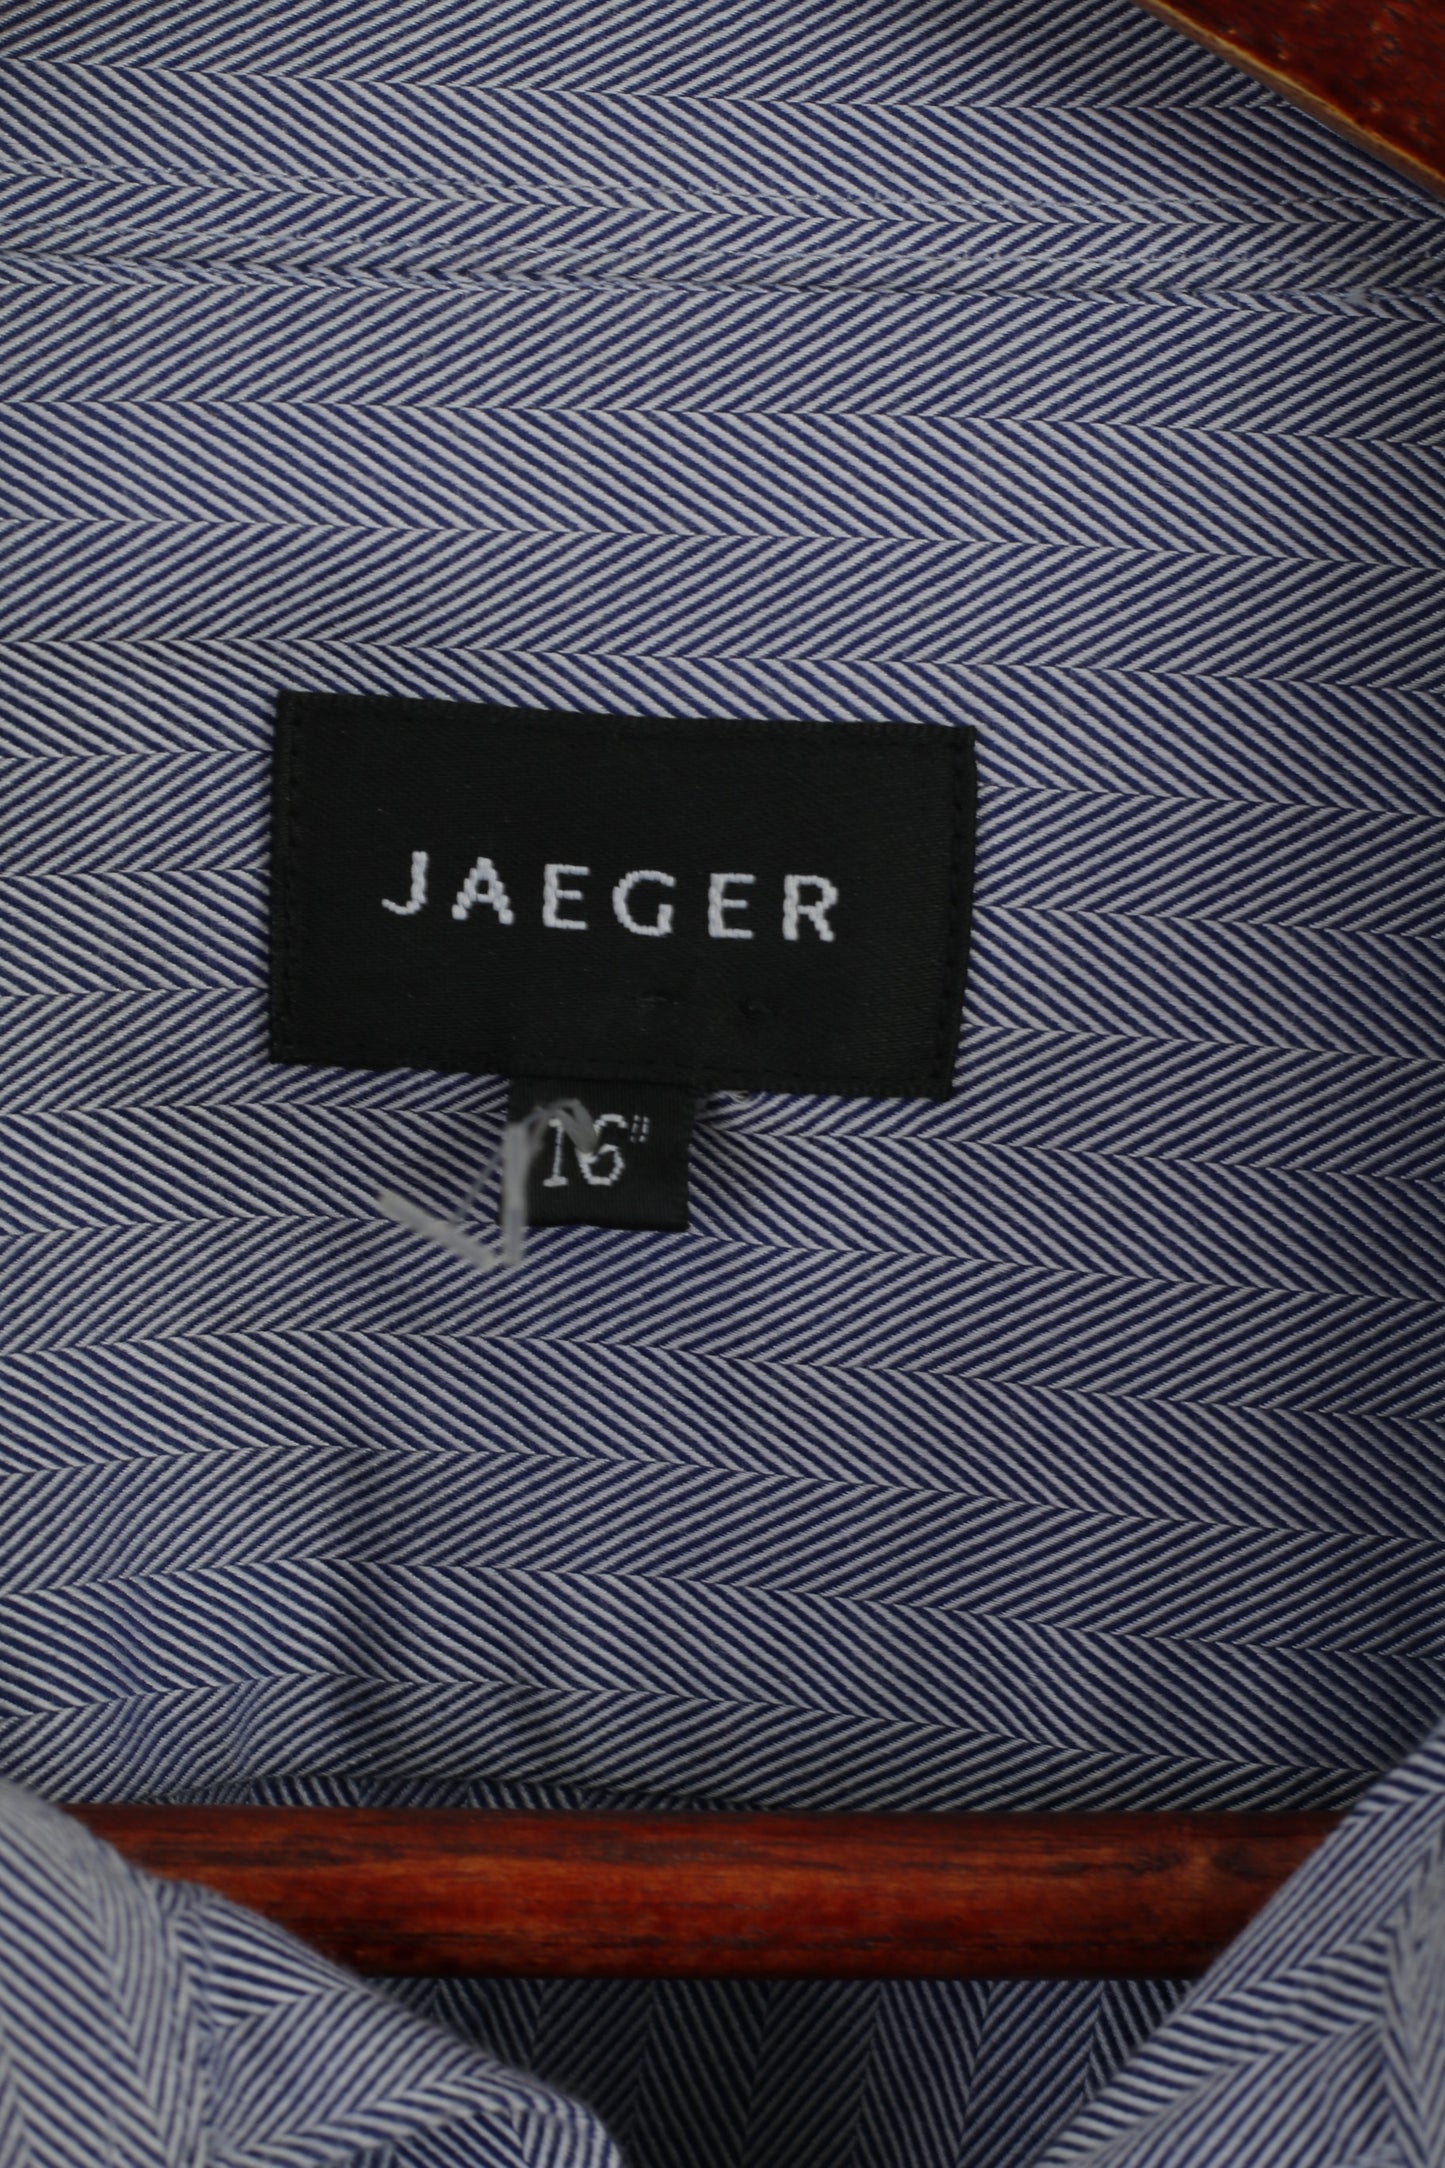 Jaeger Hommes 16 L Chemise Décontractée Bleu Coton Rayé Manches Longues Boutons Détaillés Haut